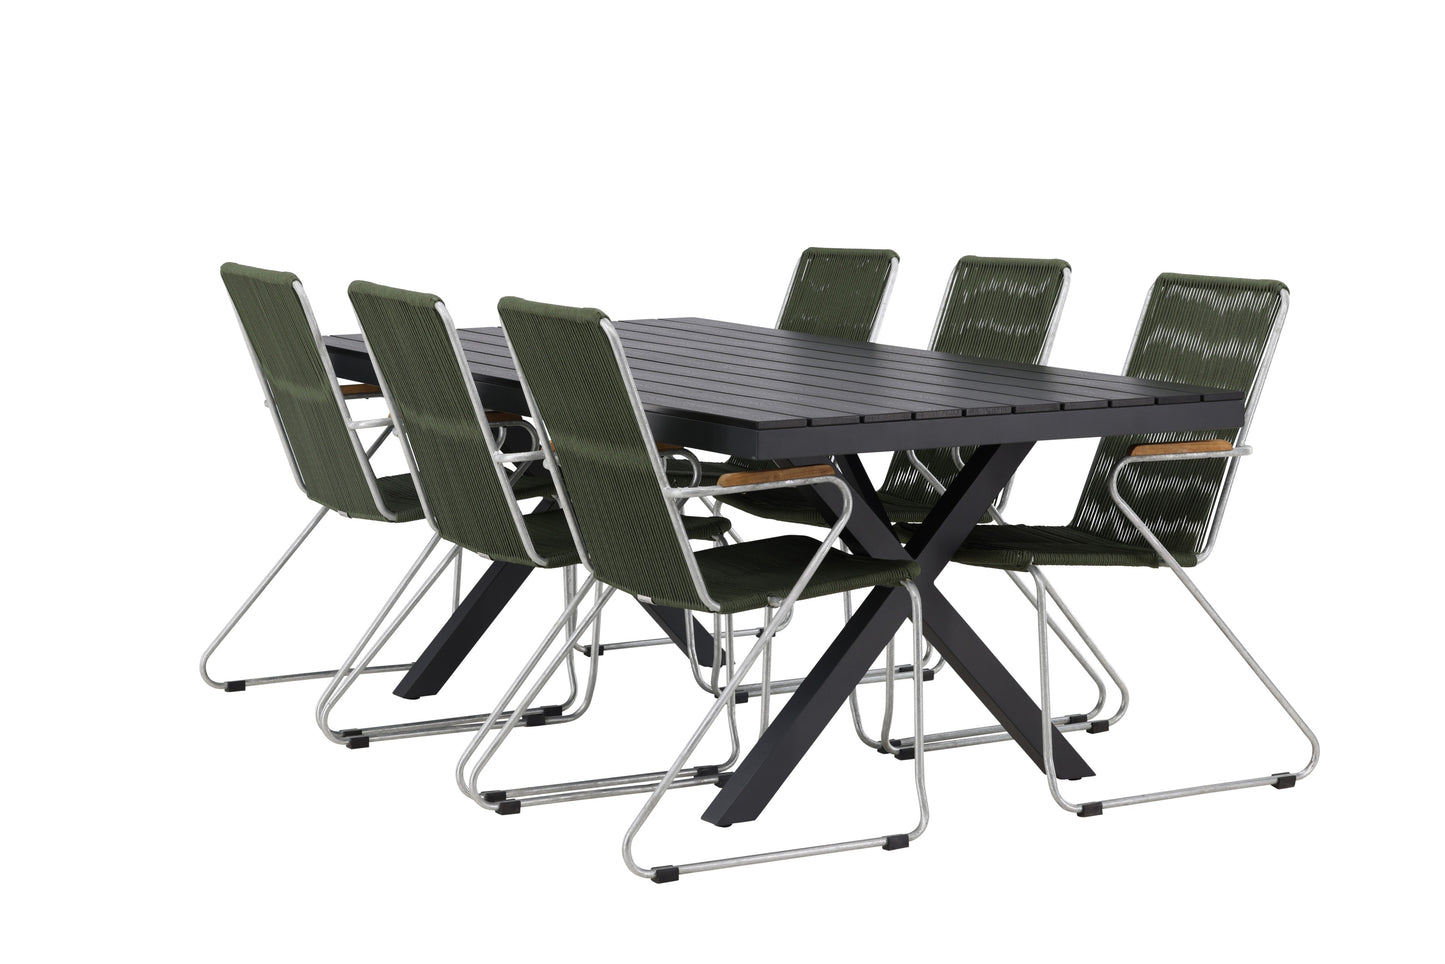 Garcia - Spisebord, Aluminium - Sort / Rektangulær 100*200* + Bois stol Stål - Sølv / Grønt Reb